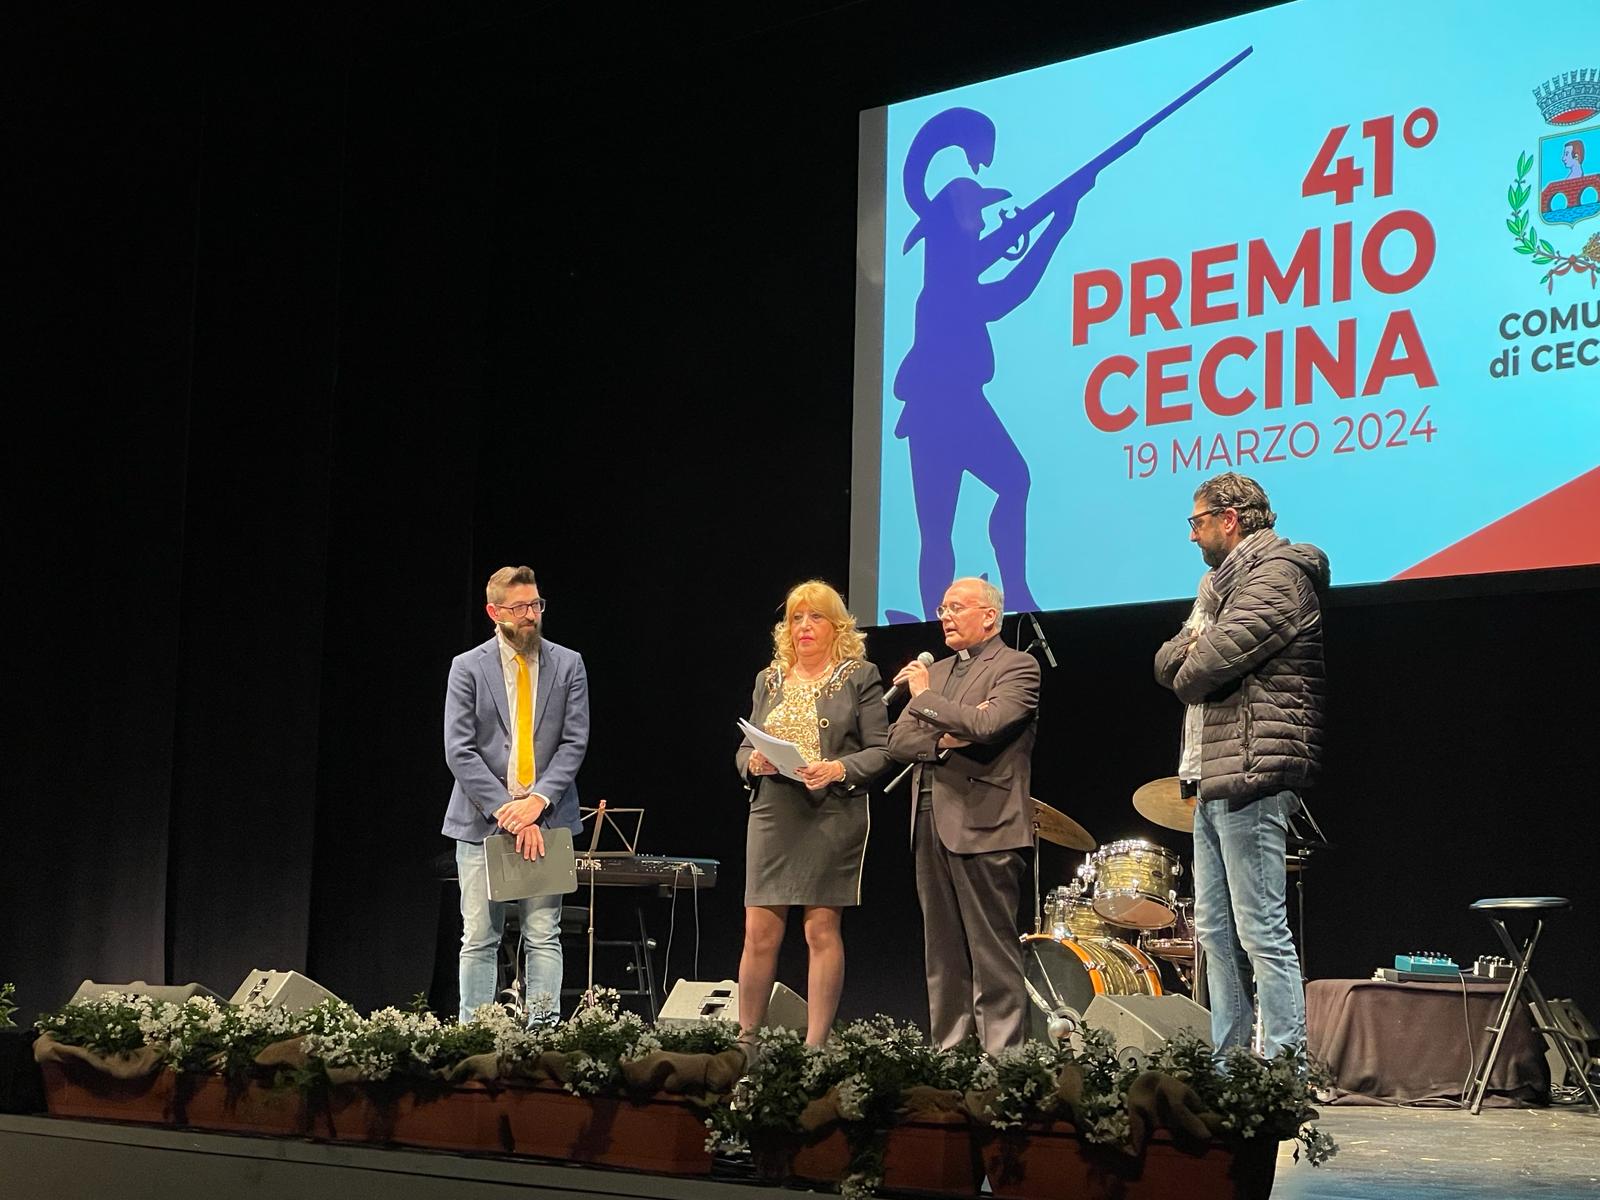 41° Premio Cecina 2024